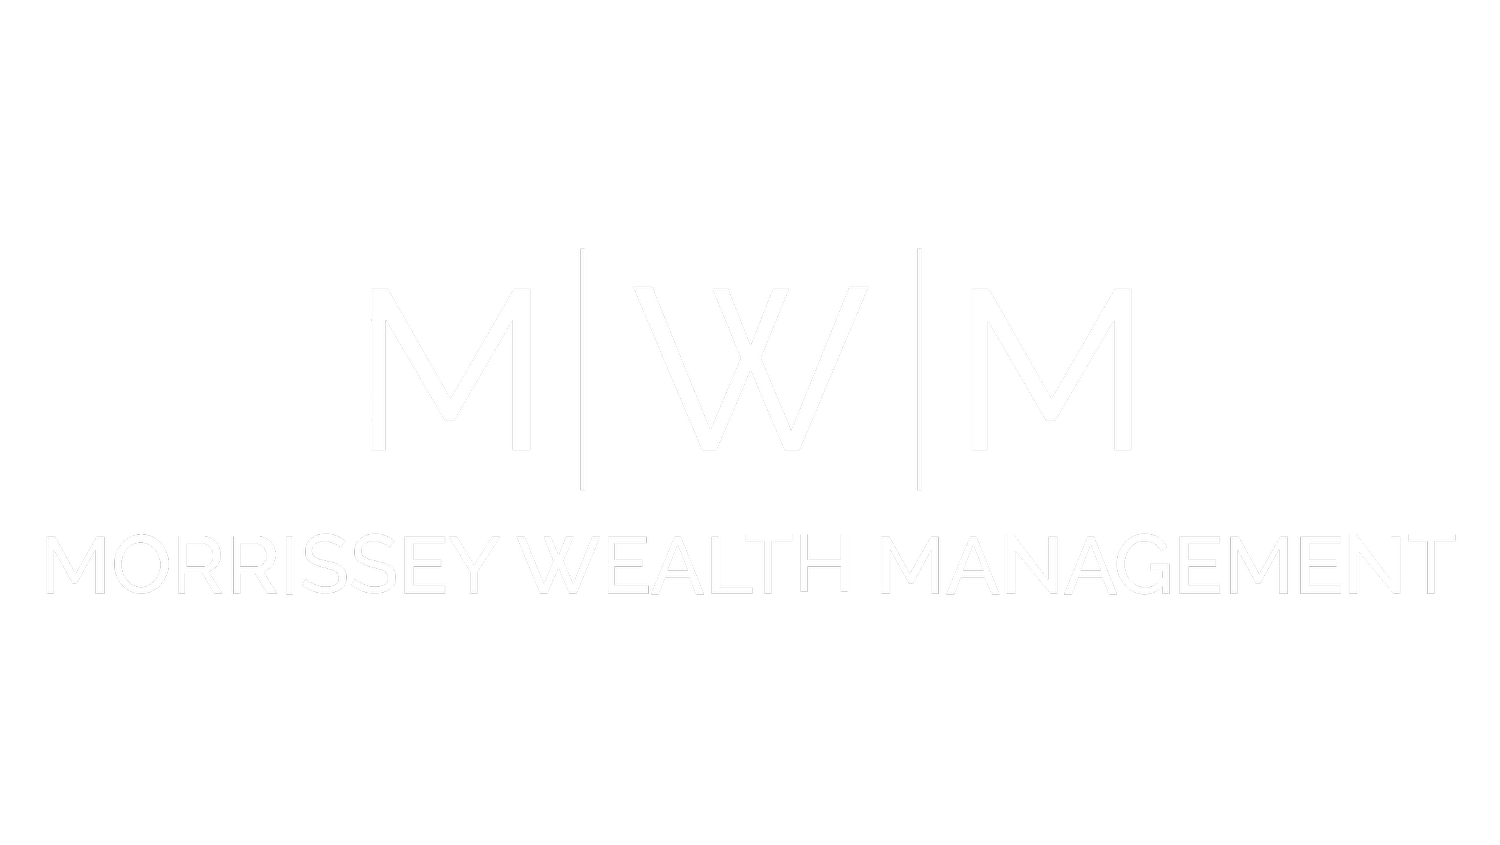 Morrissey Wealth Management